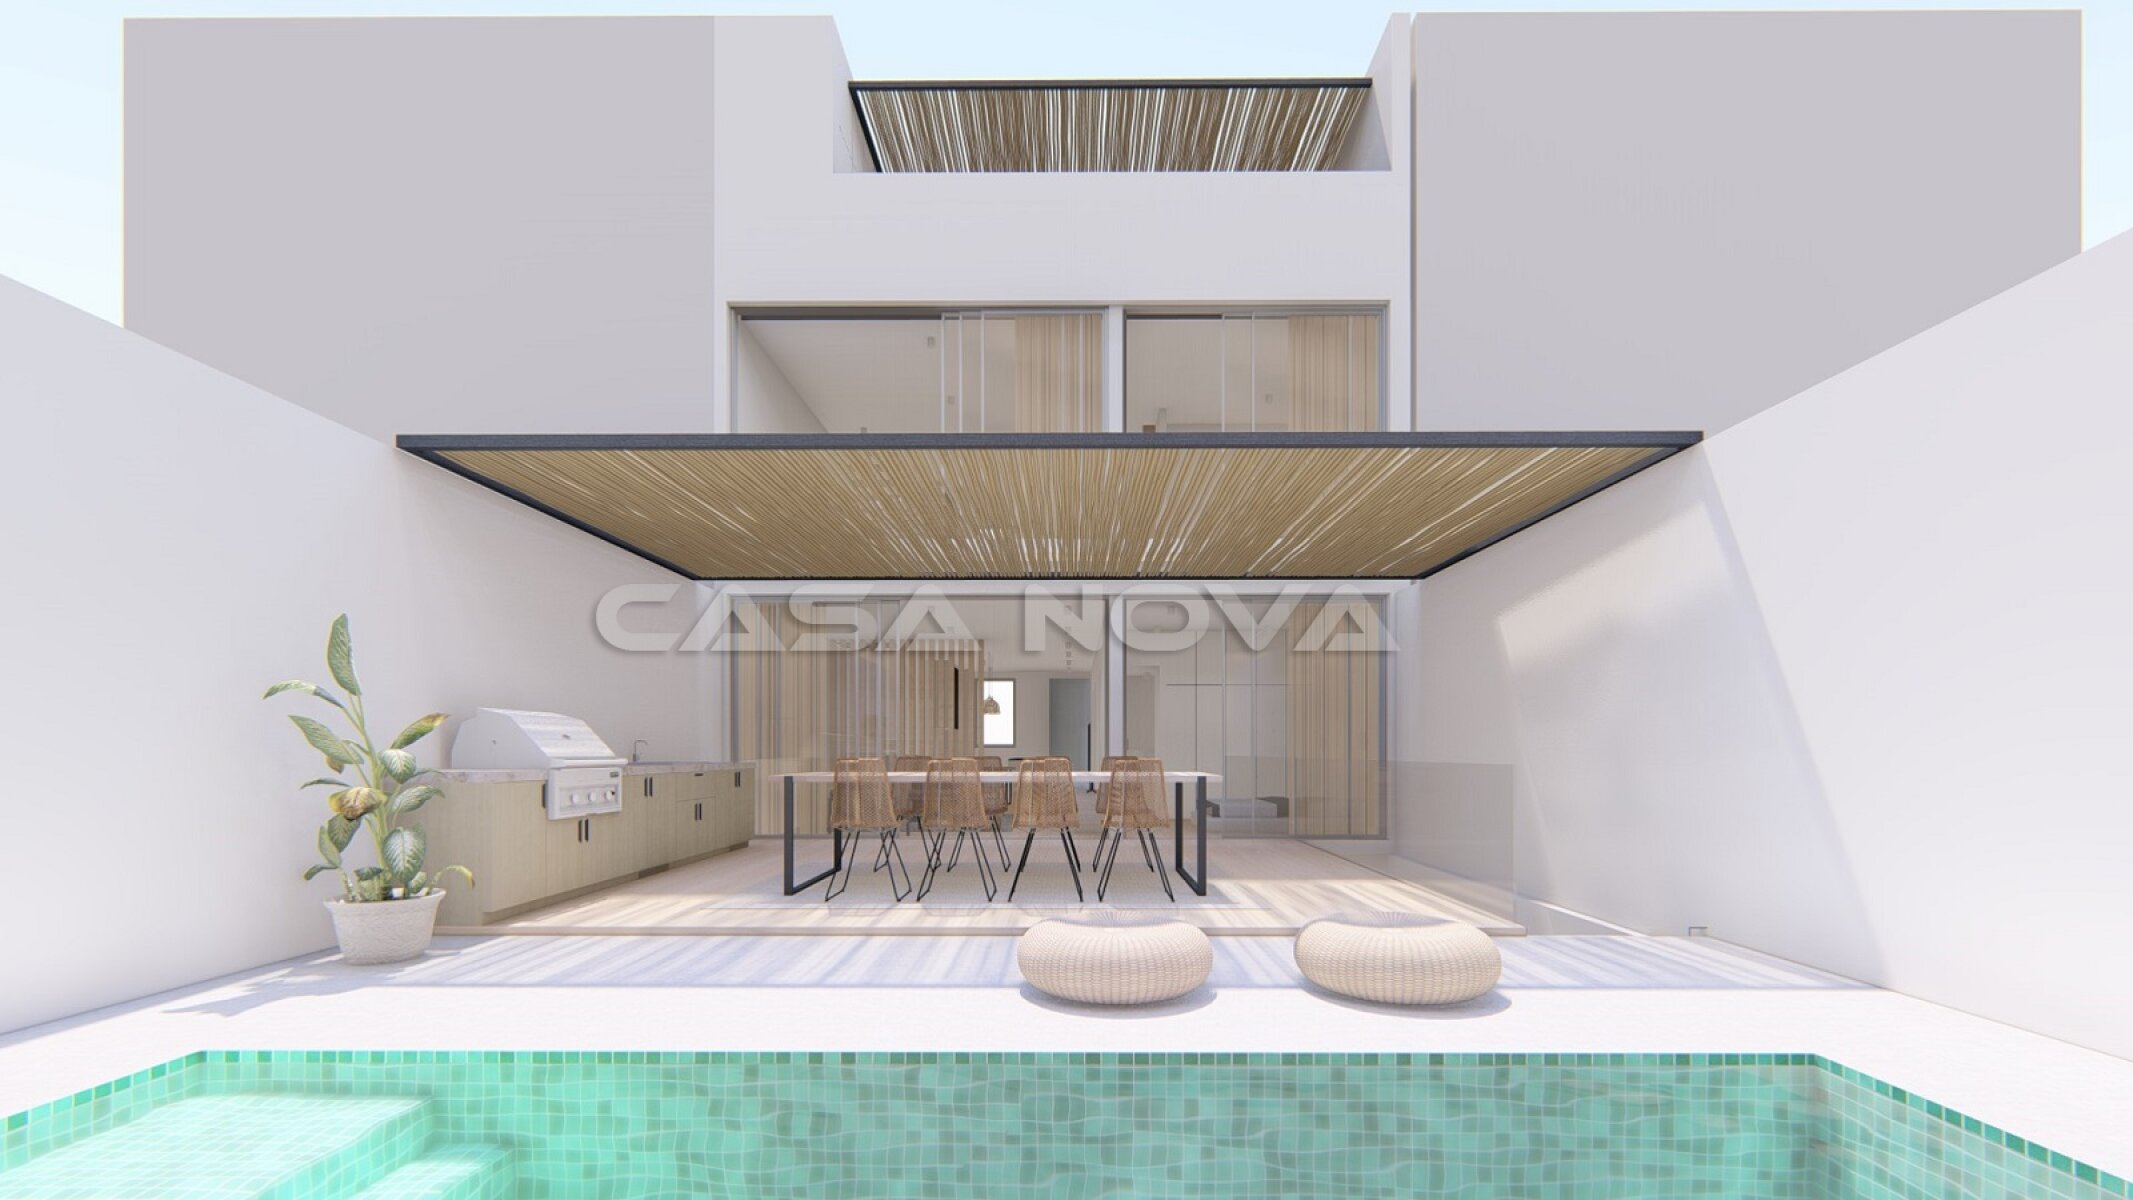 Immobilien Neubau- Projekt mit Lizenz  f�r 2 Duplex- Apartments